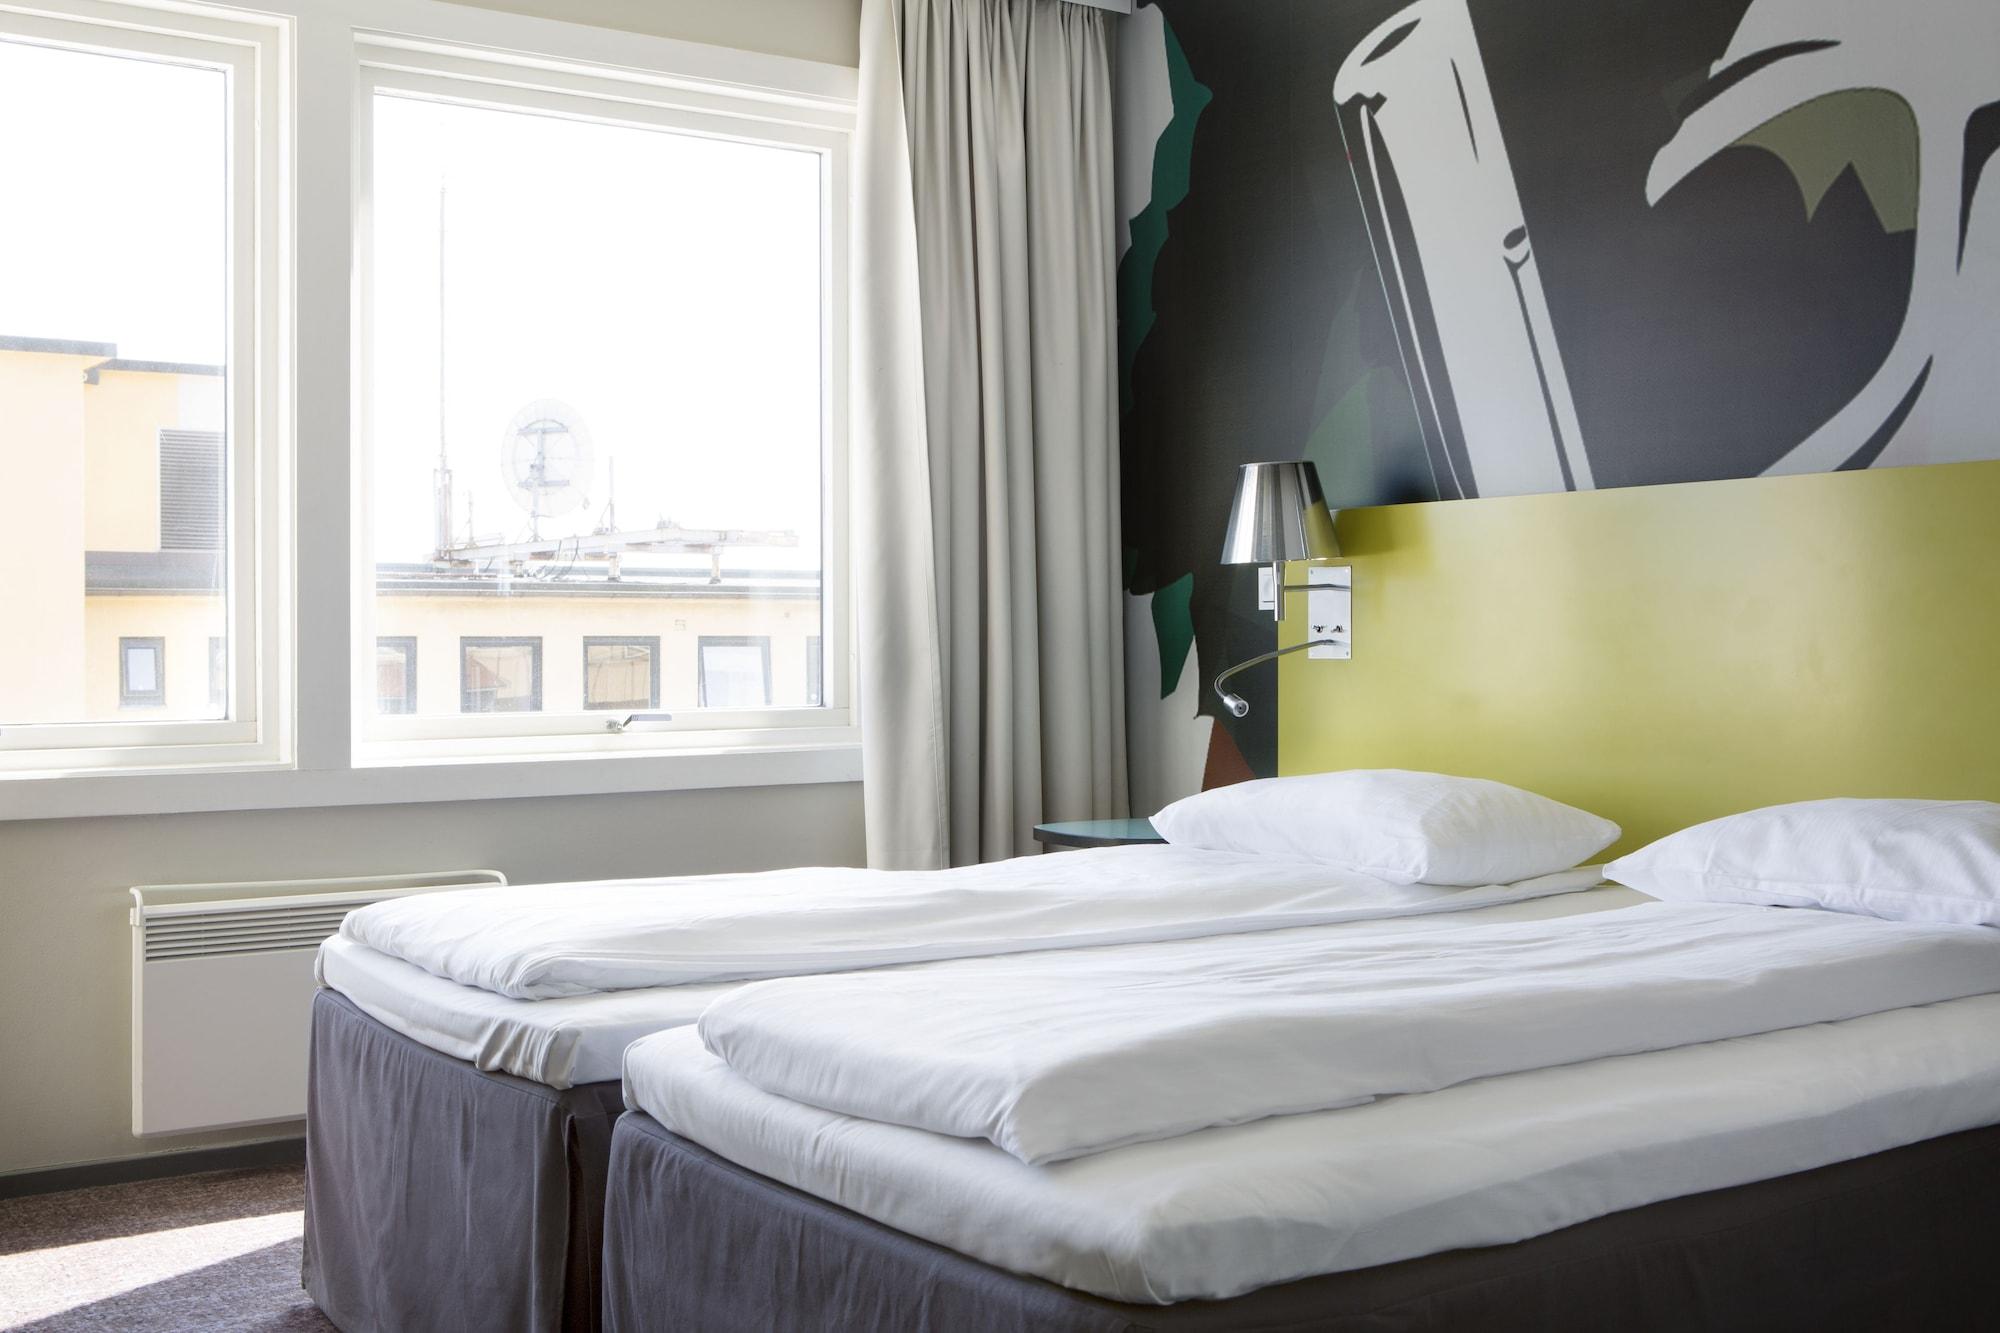 Comfort Hotel Kristiansand Eksteriør bilde